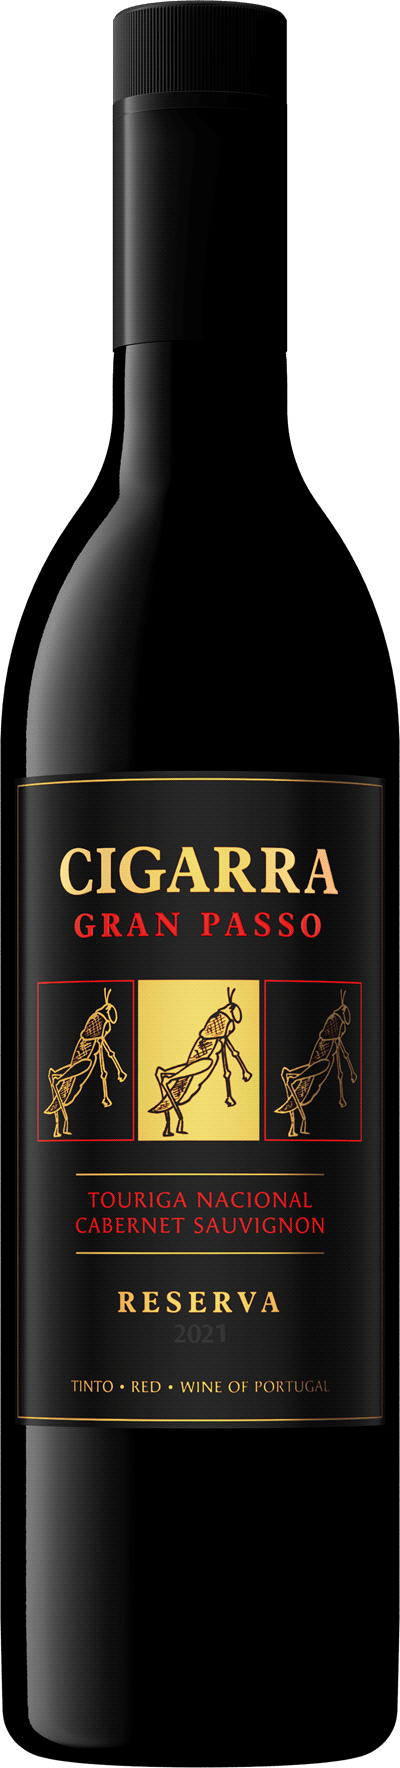 Cigarra Gran Passo Touriga Nacional Cabernet Sauvignon, 2021